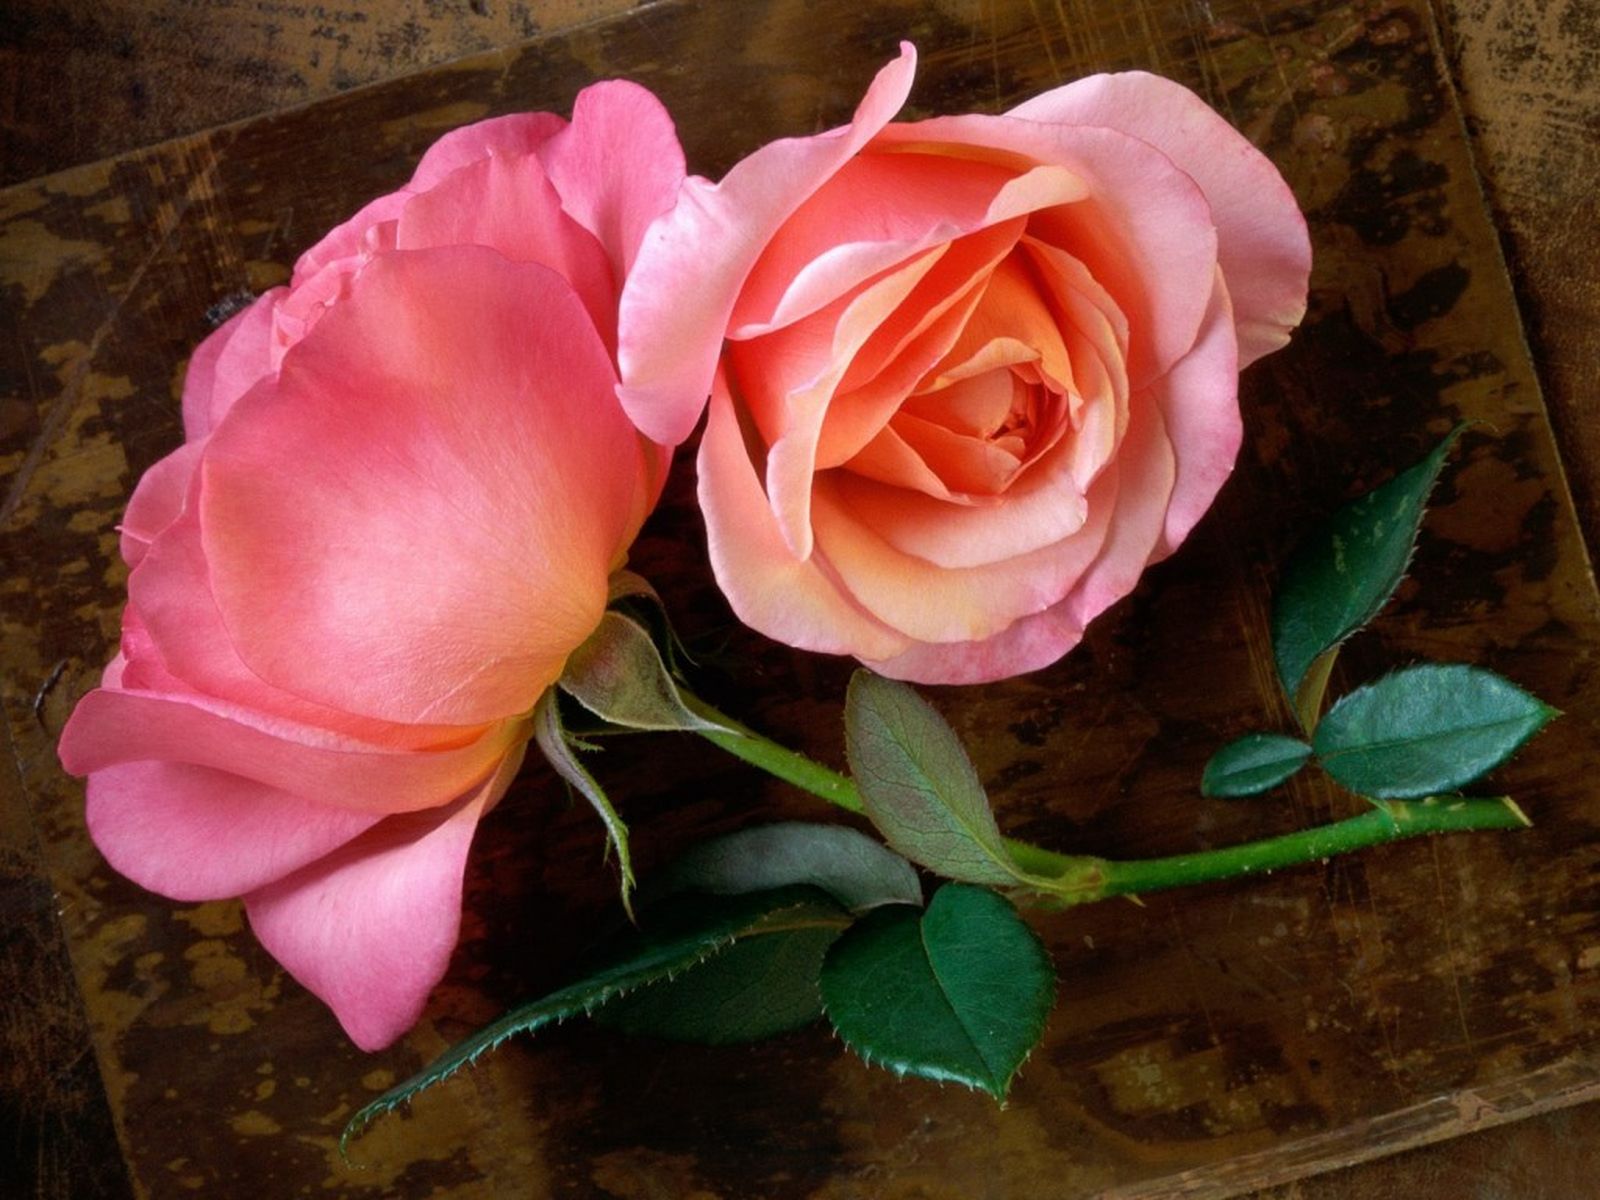 Beautiful Roses HD Desktop Wallpapers in 1080p ~ Super HD ...